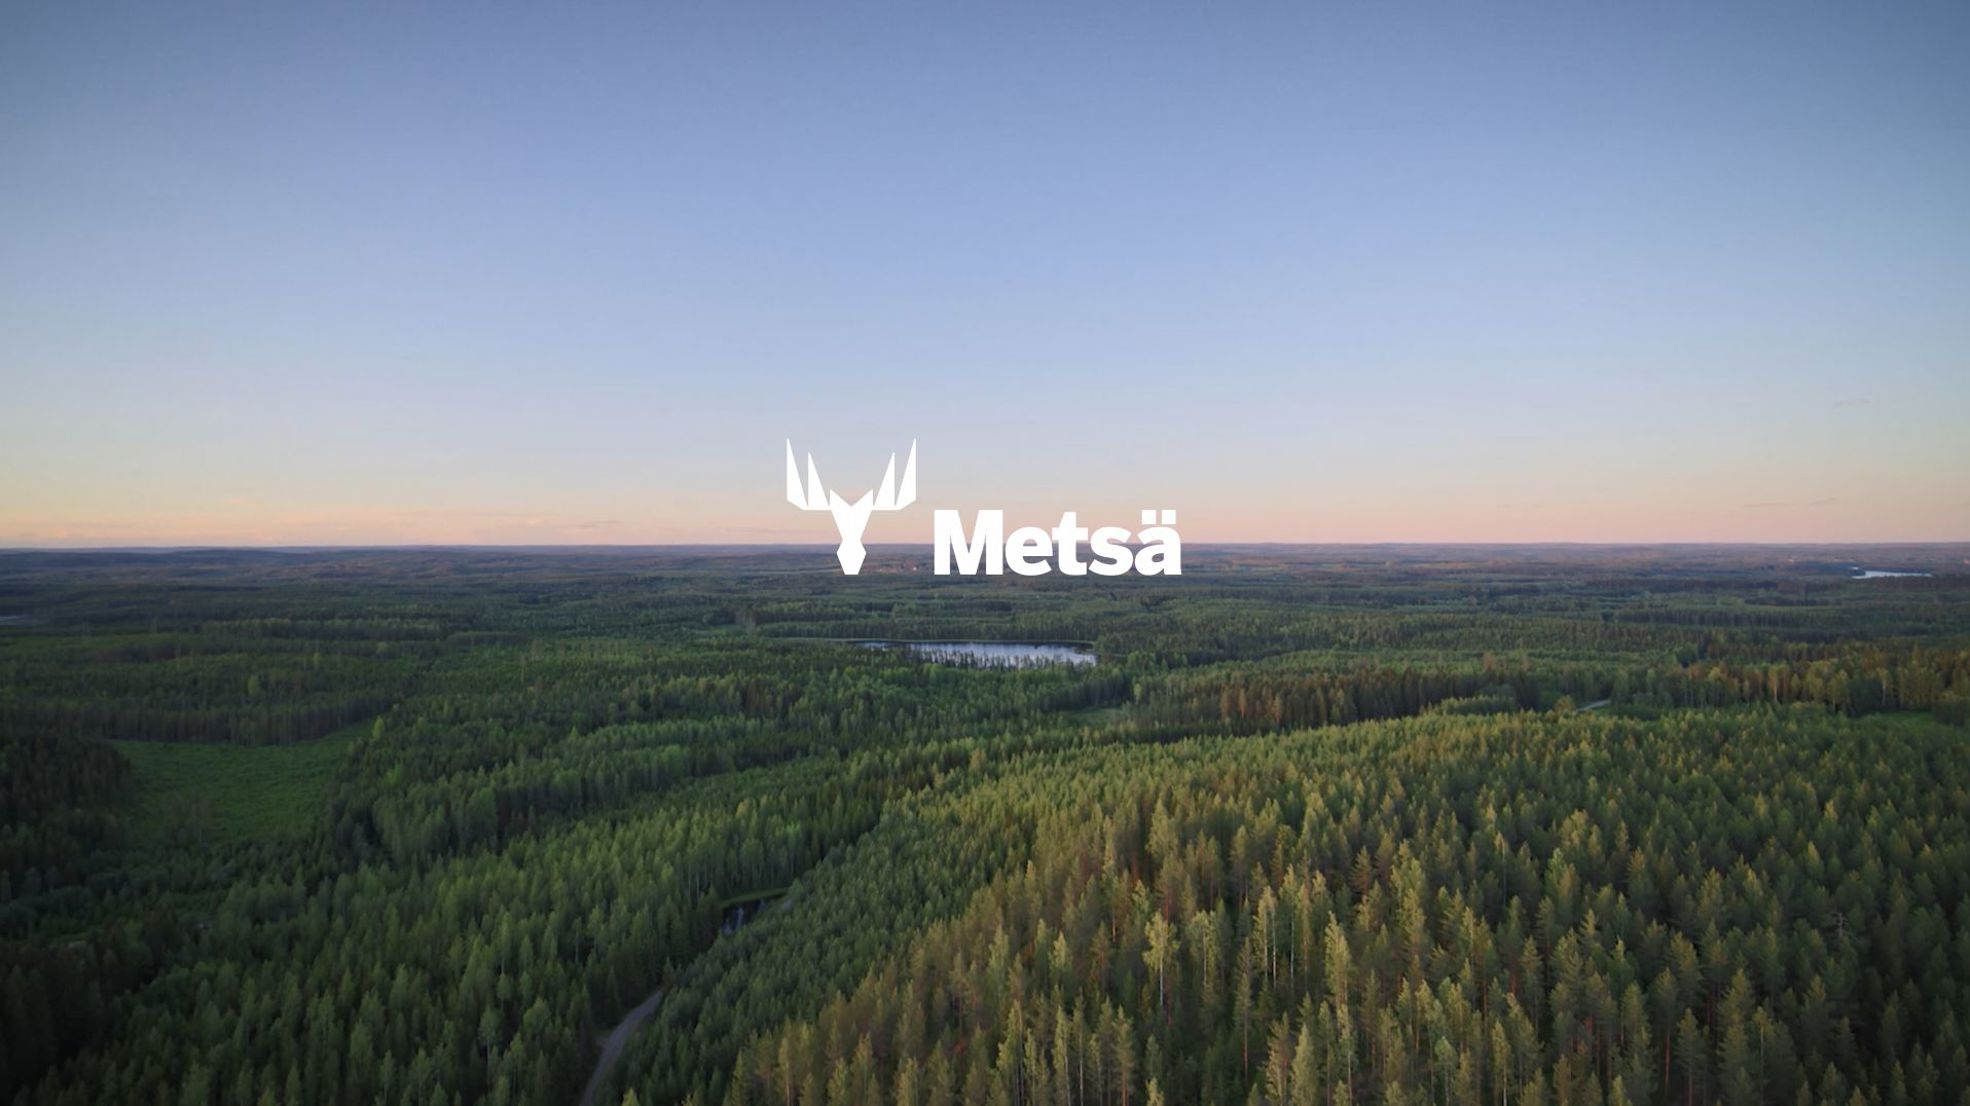 Metsä Wood's brand video